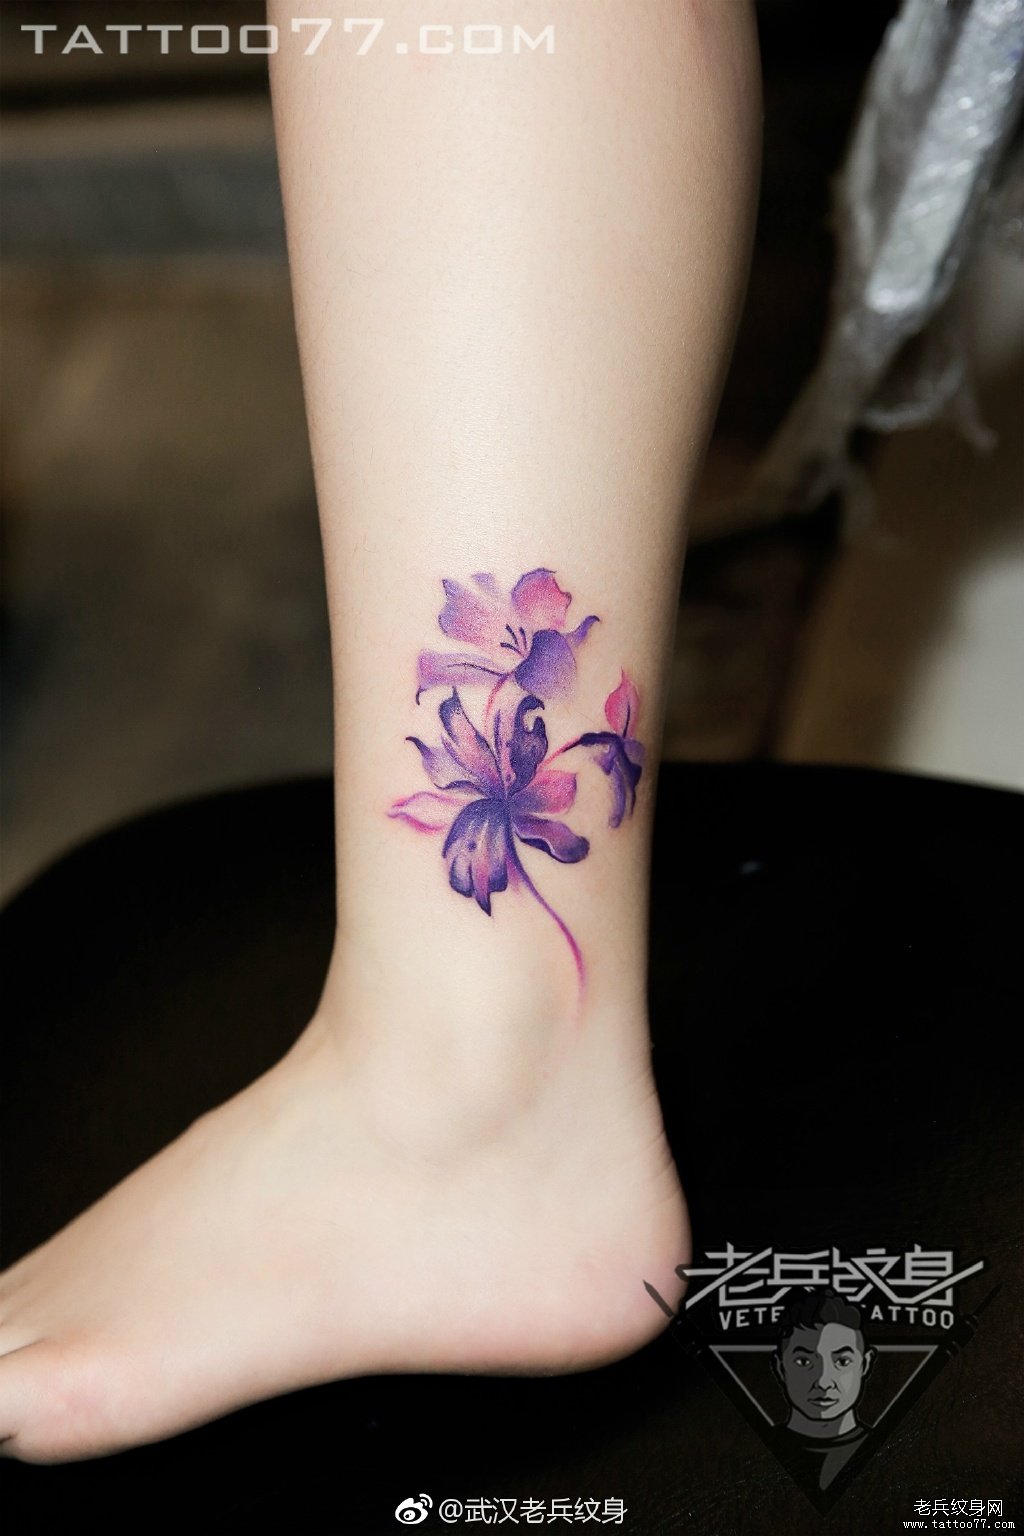 脚踝水墨花卉纹身图案作品